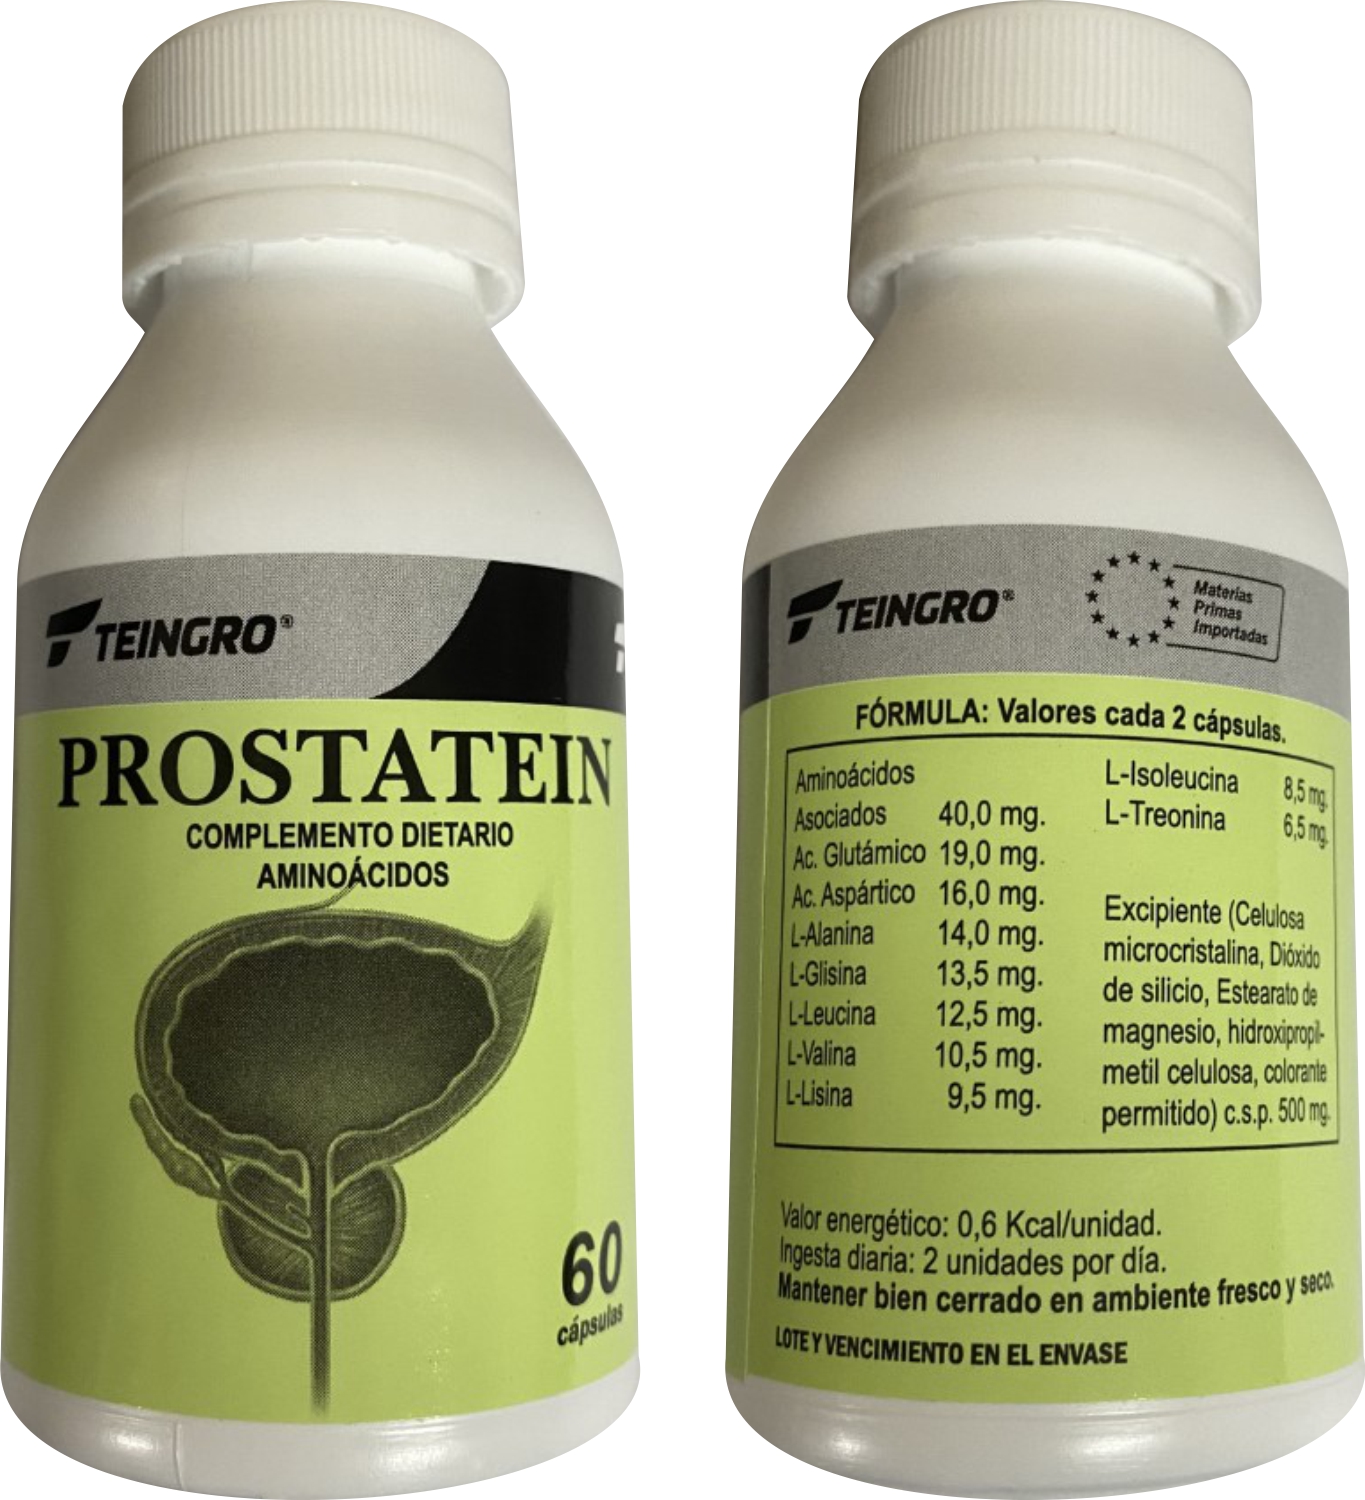 prostatein image